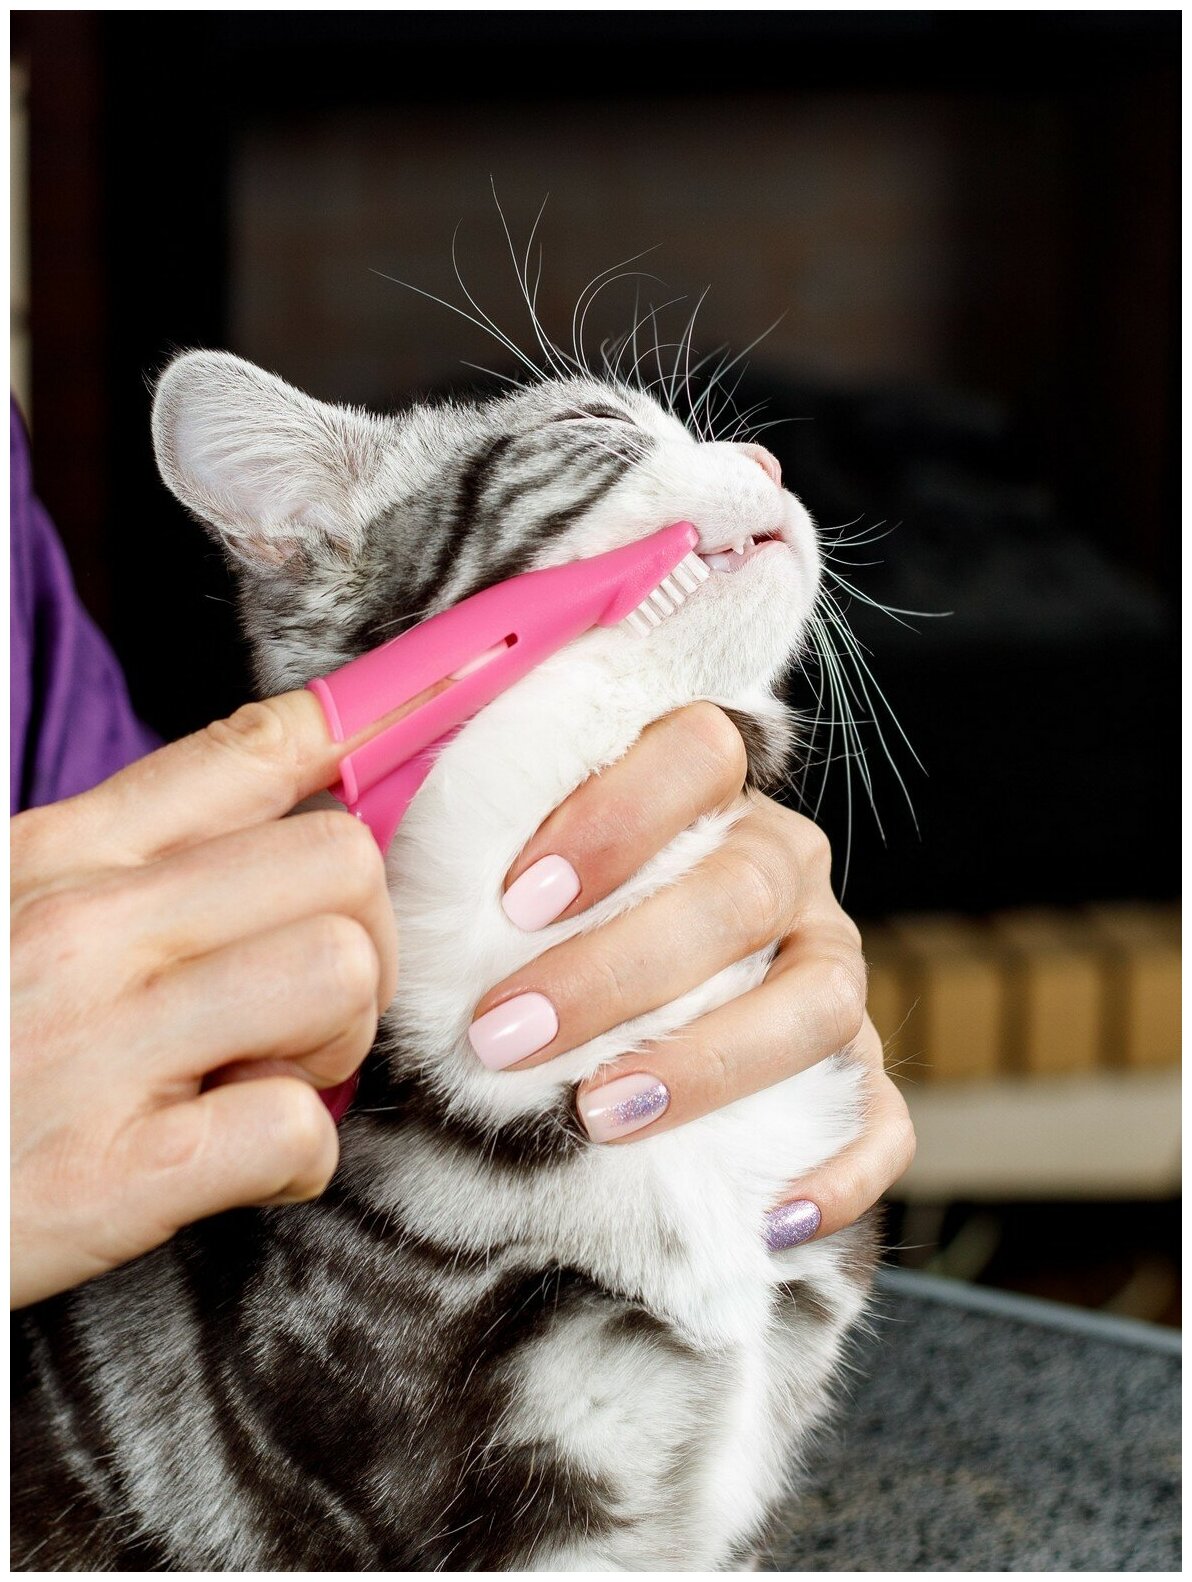 Зубная щетка для собак и кошек Japan Premium Pet анатомическая с ручкой для снятия налета, цвет розовый. - фотография № 9